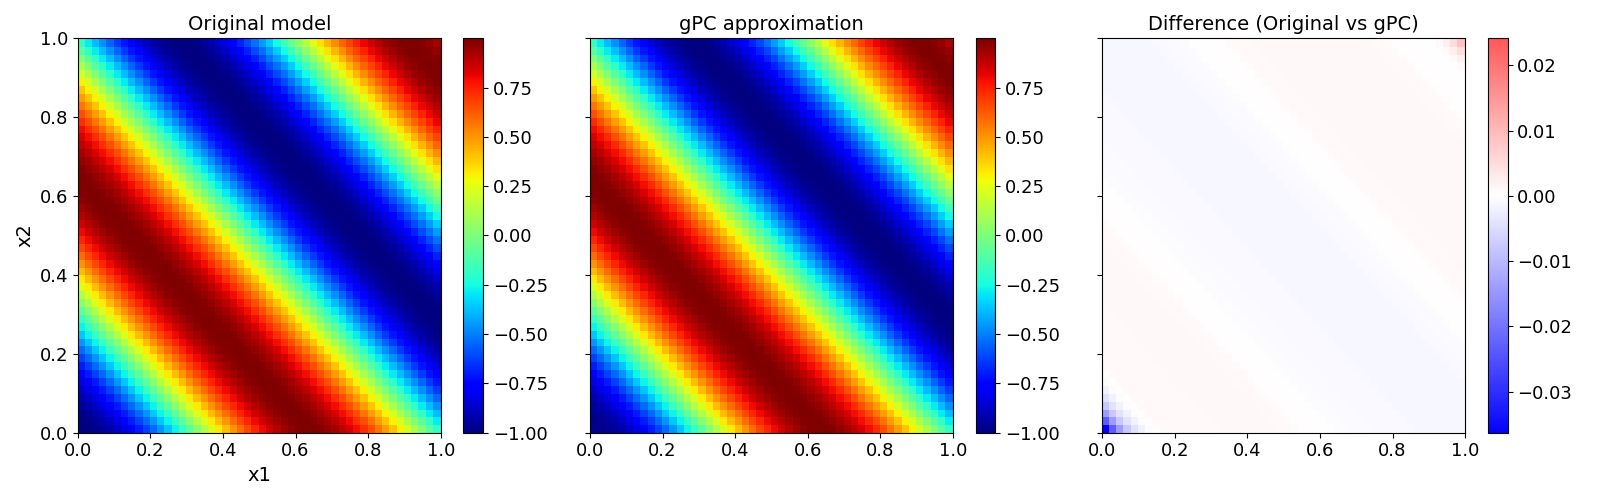 Original model, gPC approximation, Difference (Original vs gPC)